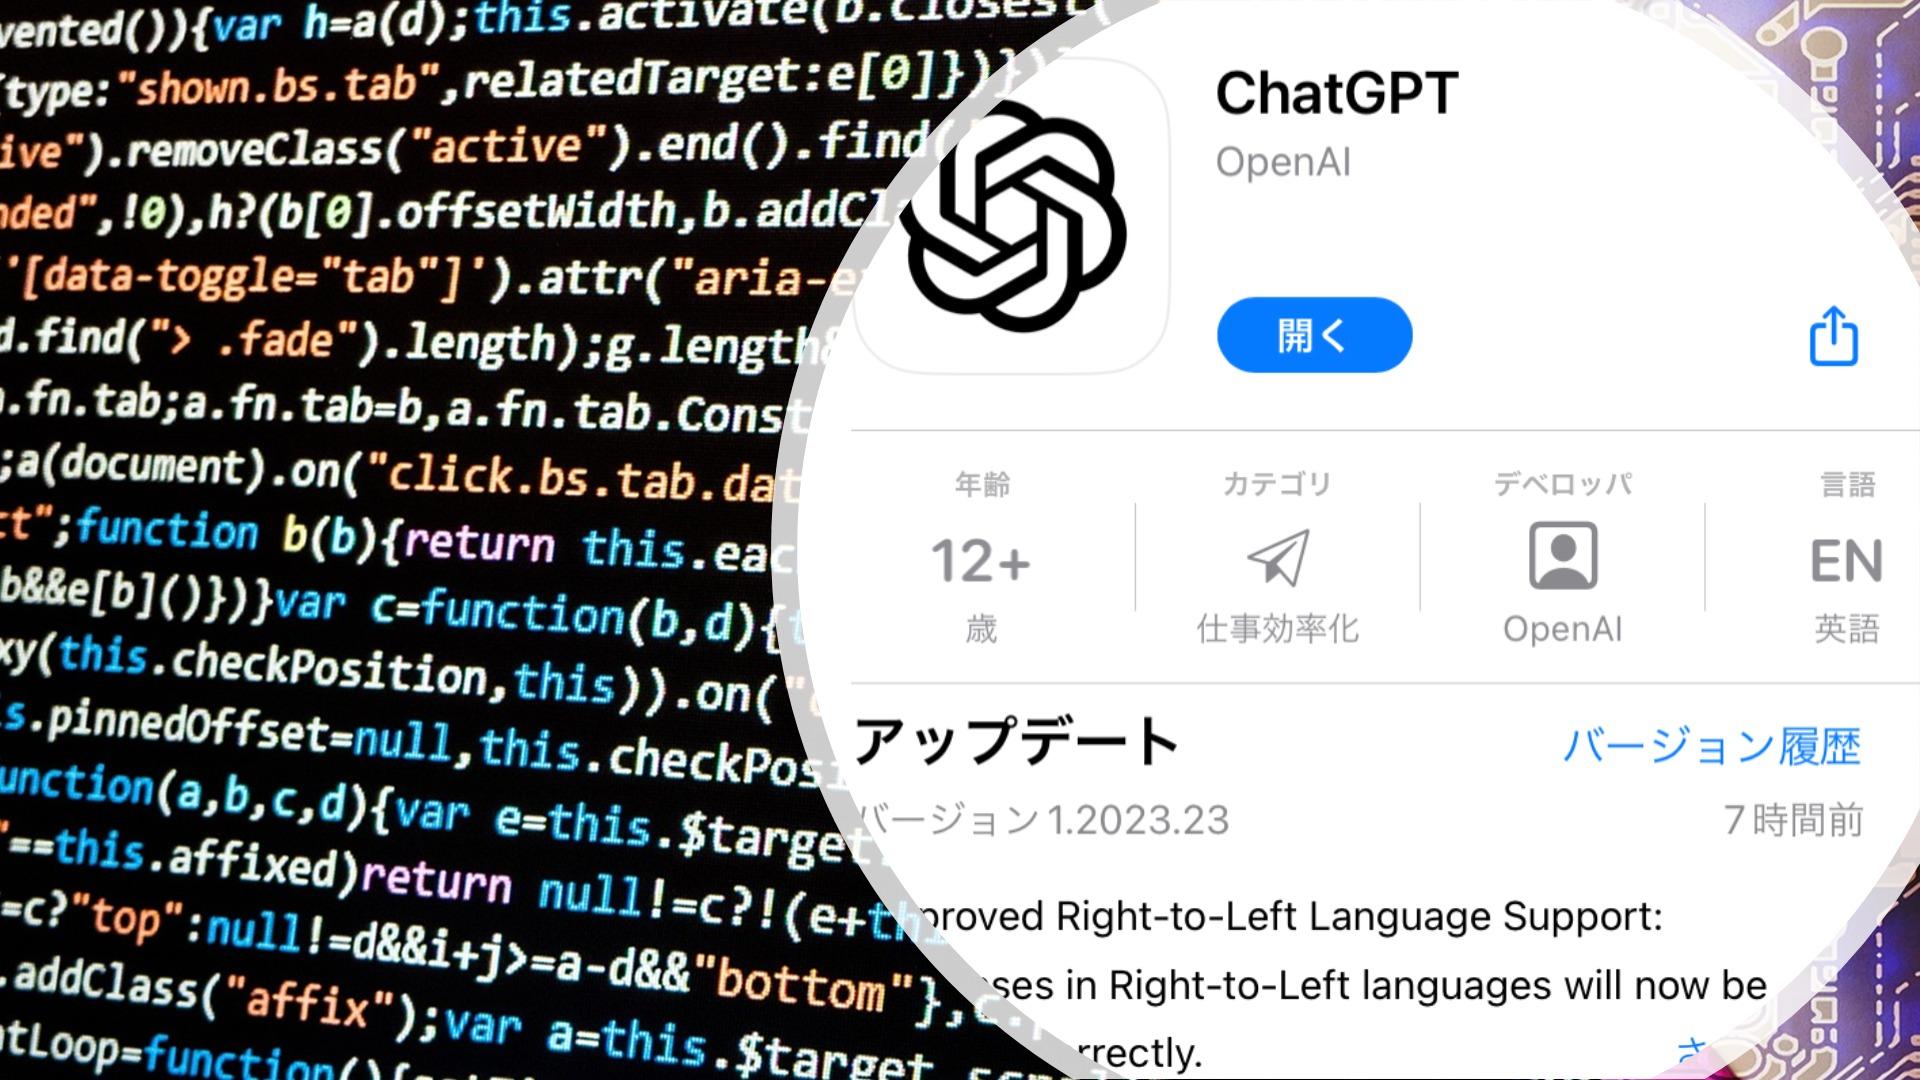 ついに来た！ChatGPTのiPhoneアプリが日本でも利用可能に！こんな時代だからこそ、AIとのコミュニケーションを！